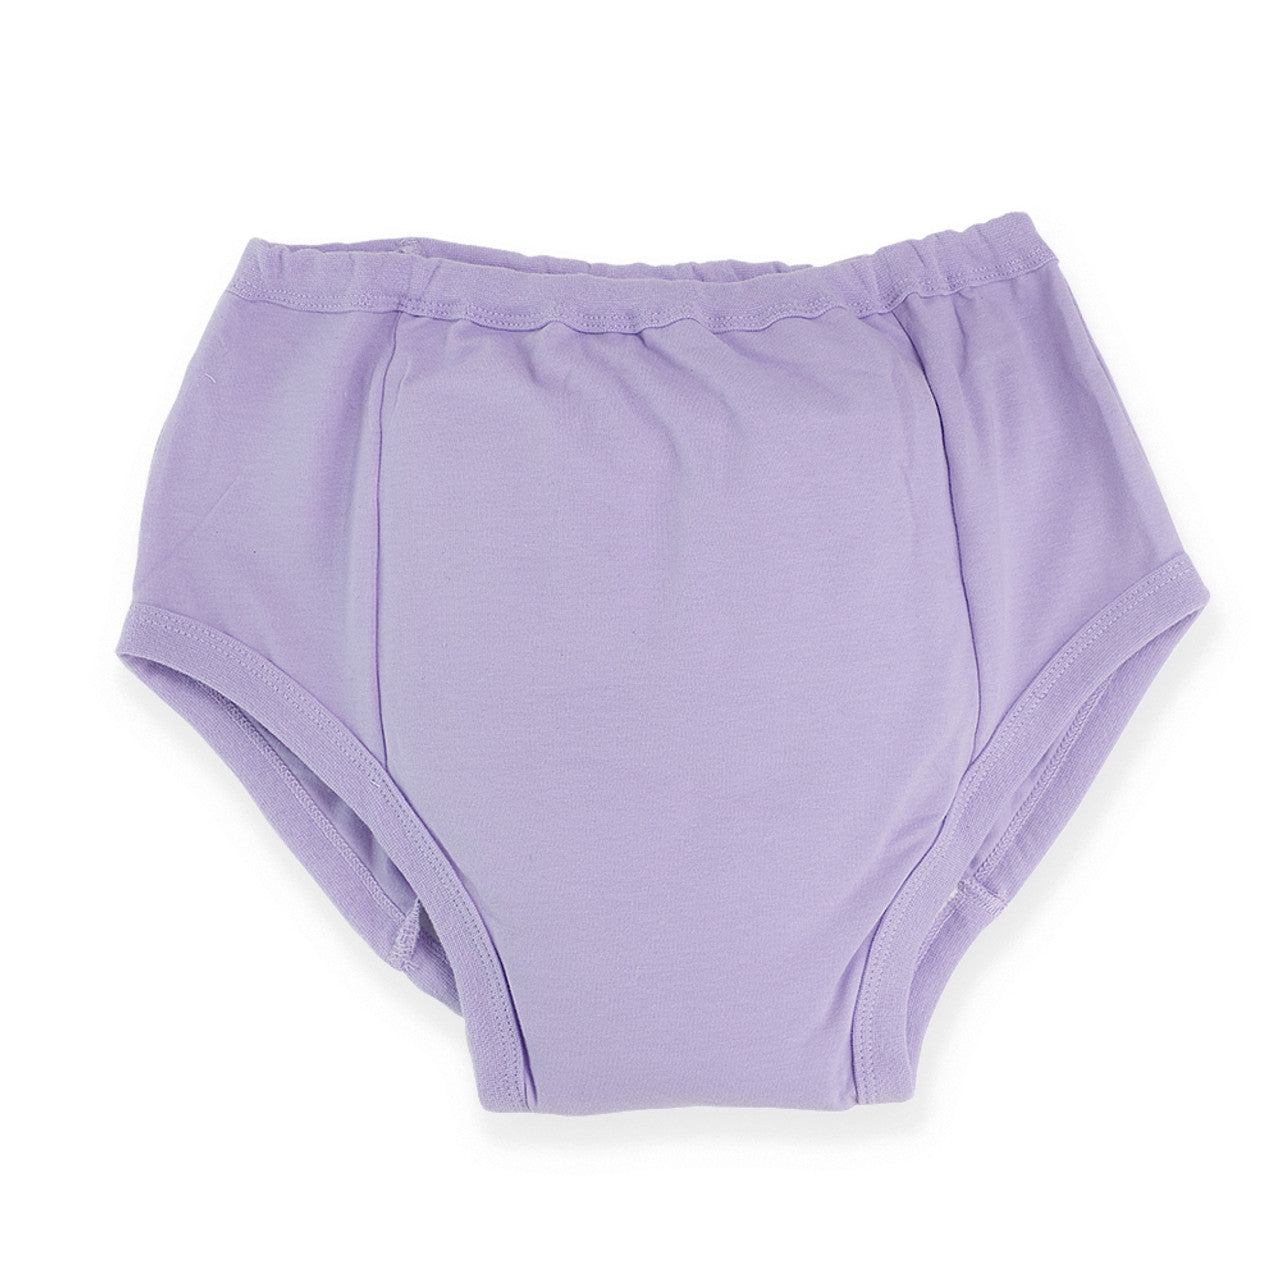 Rearz - Training Pants - Lavender